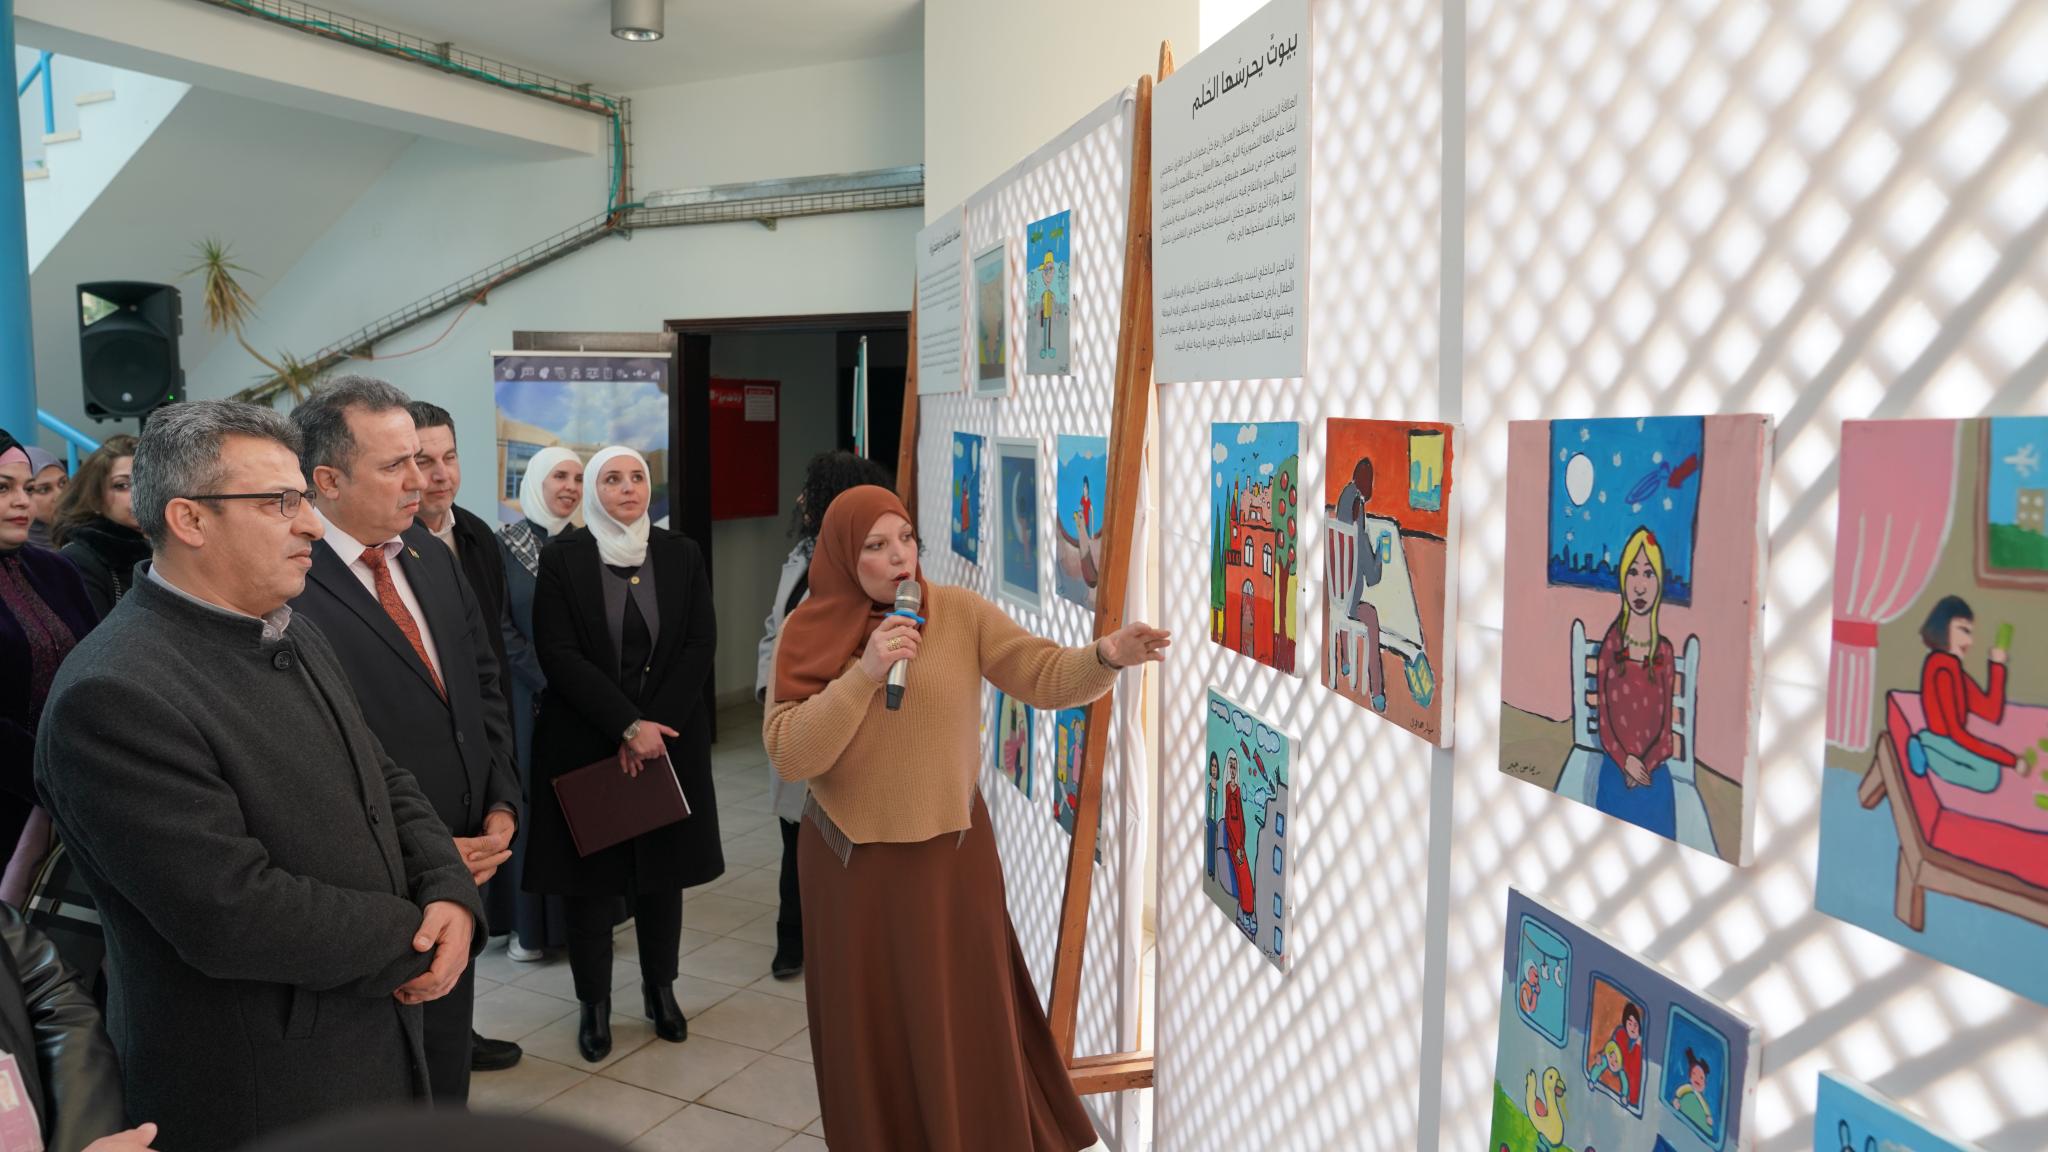 مركز حسيب الصباغ للتميز في الجامعة ينظم معرض رسومات بعنوان "لن نعتاد المشهد"